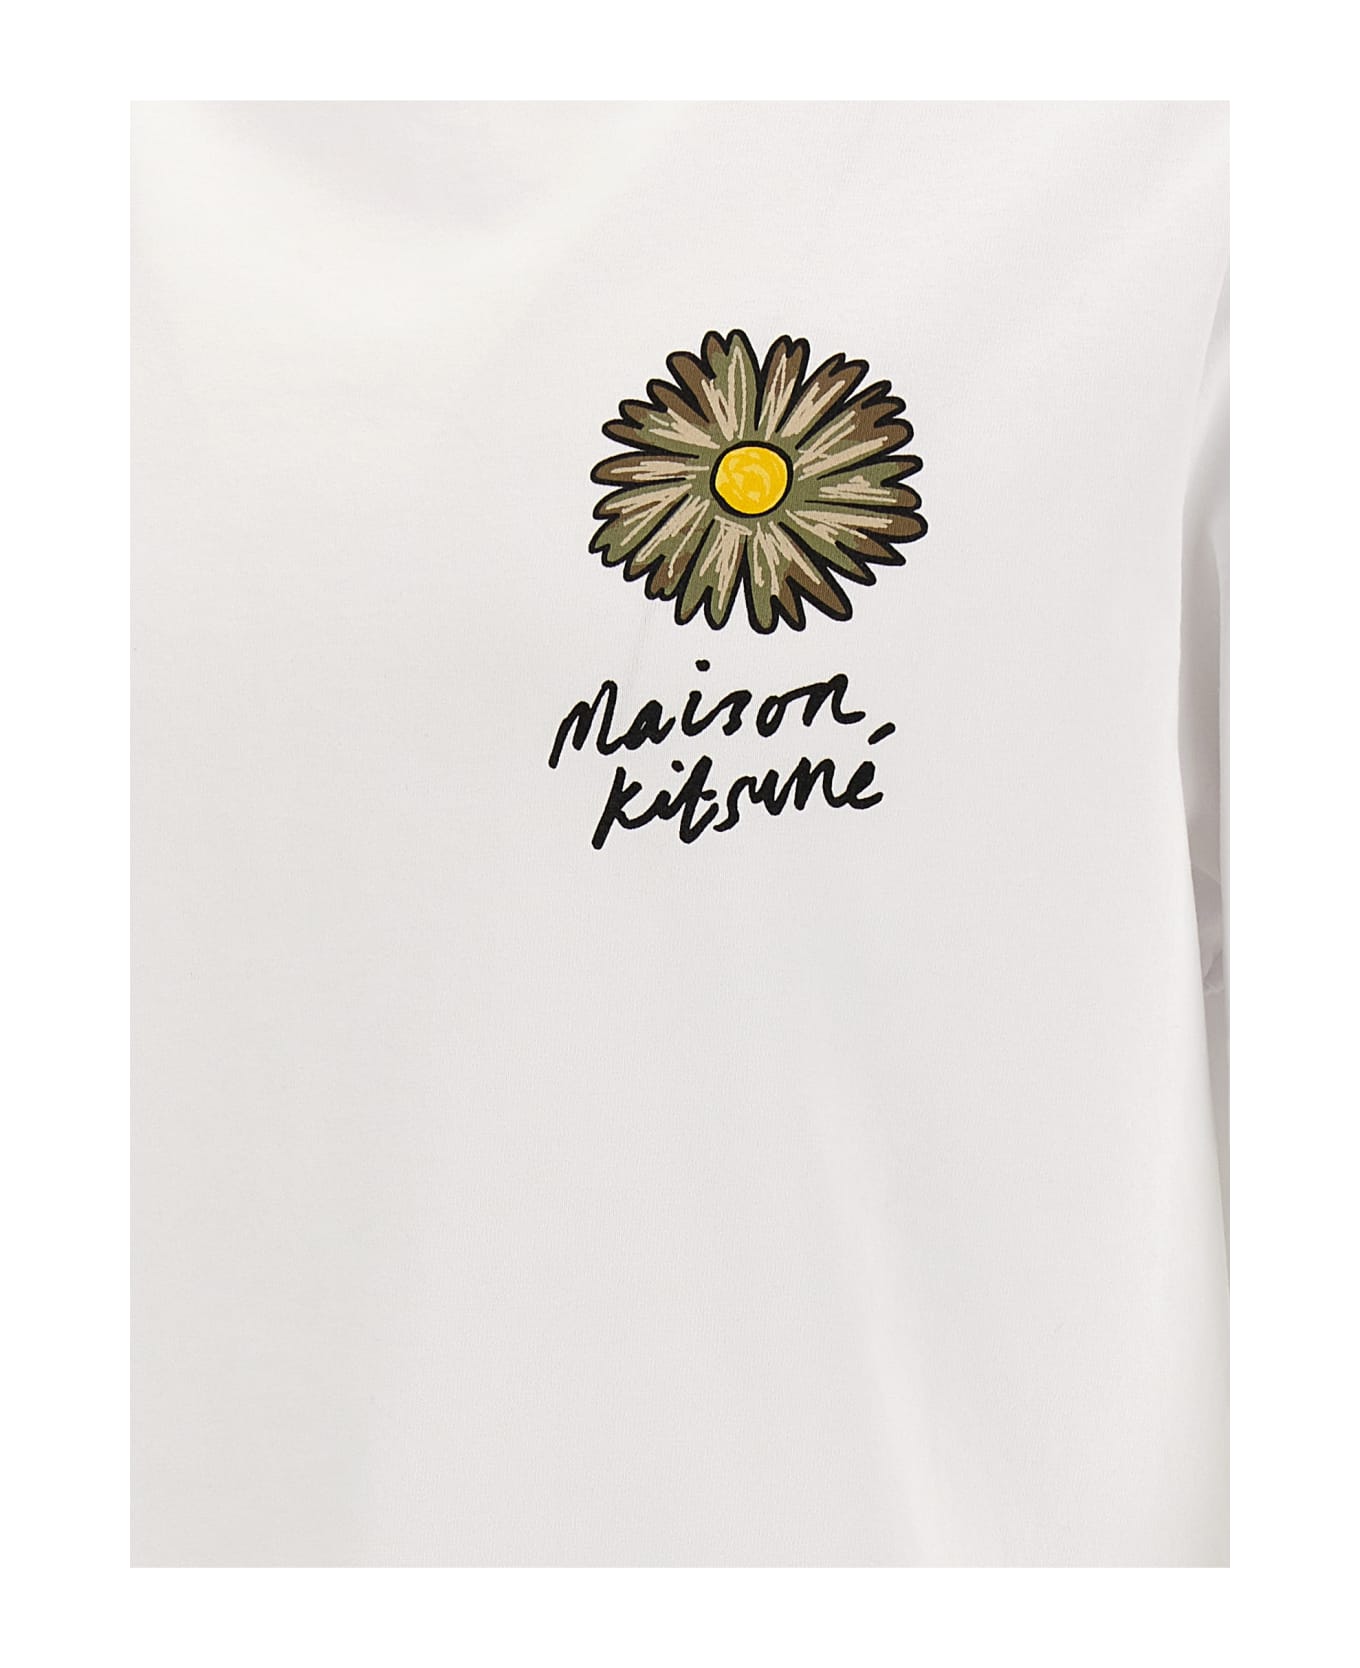 Maison Kitsuné 'floating Flower' T-shirt - White